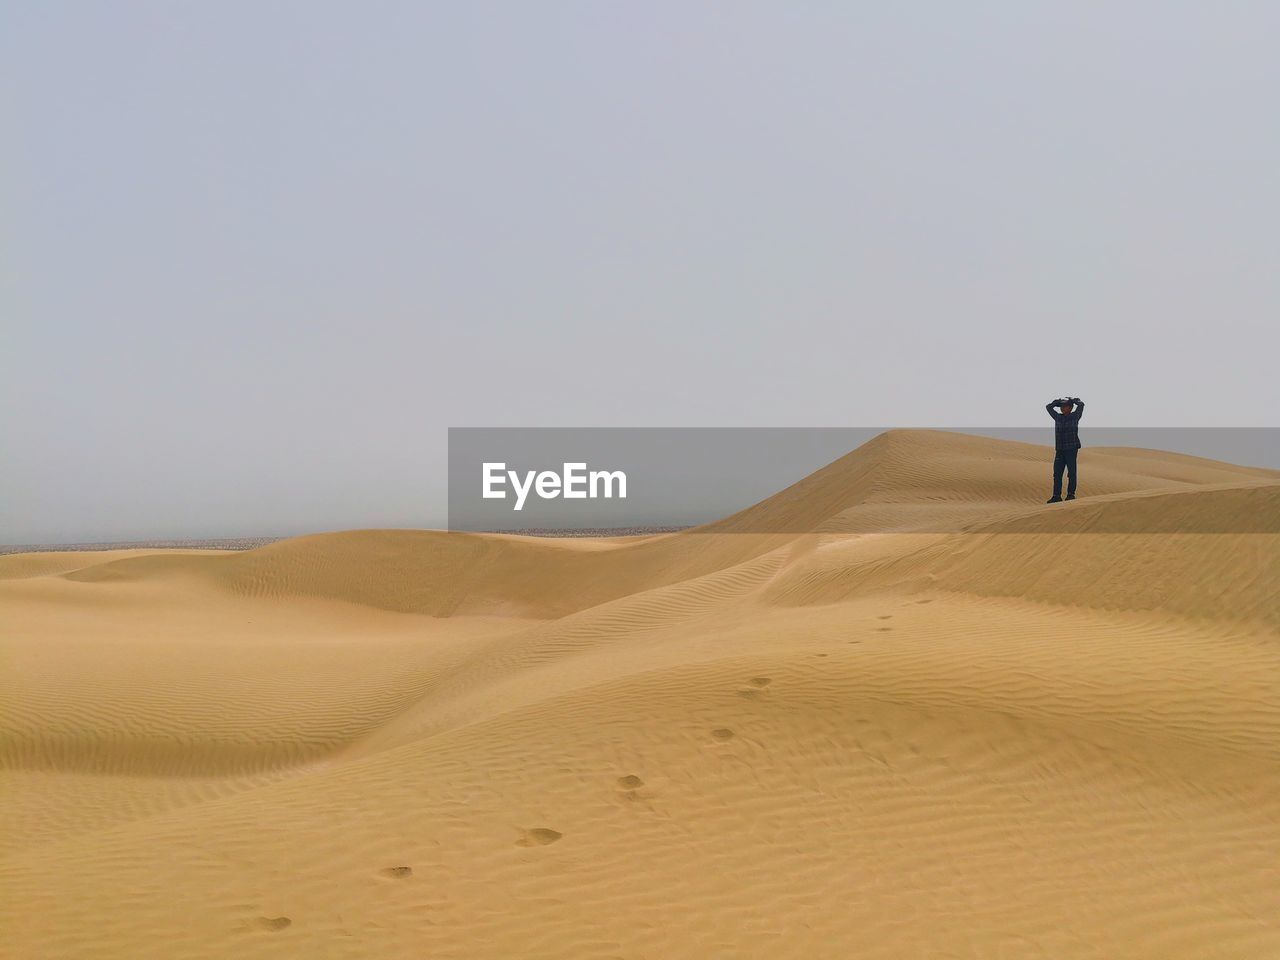 SCENIC VIEW OF DESERT